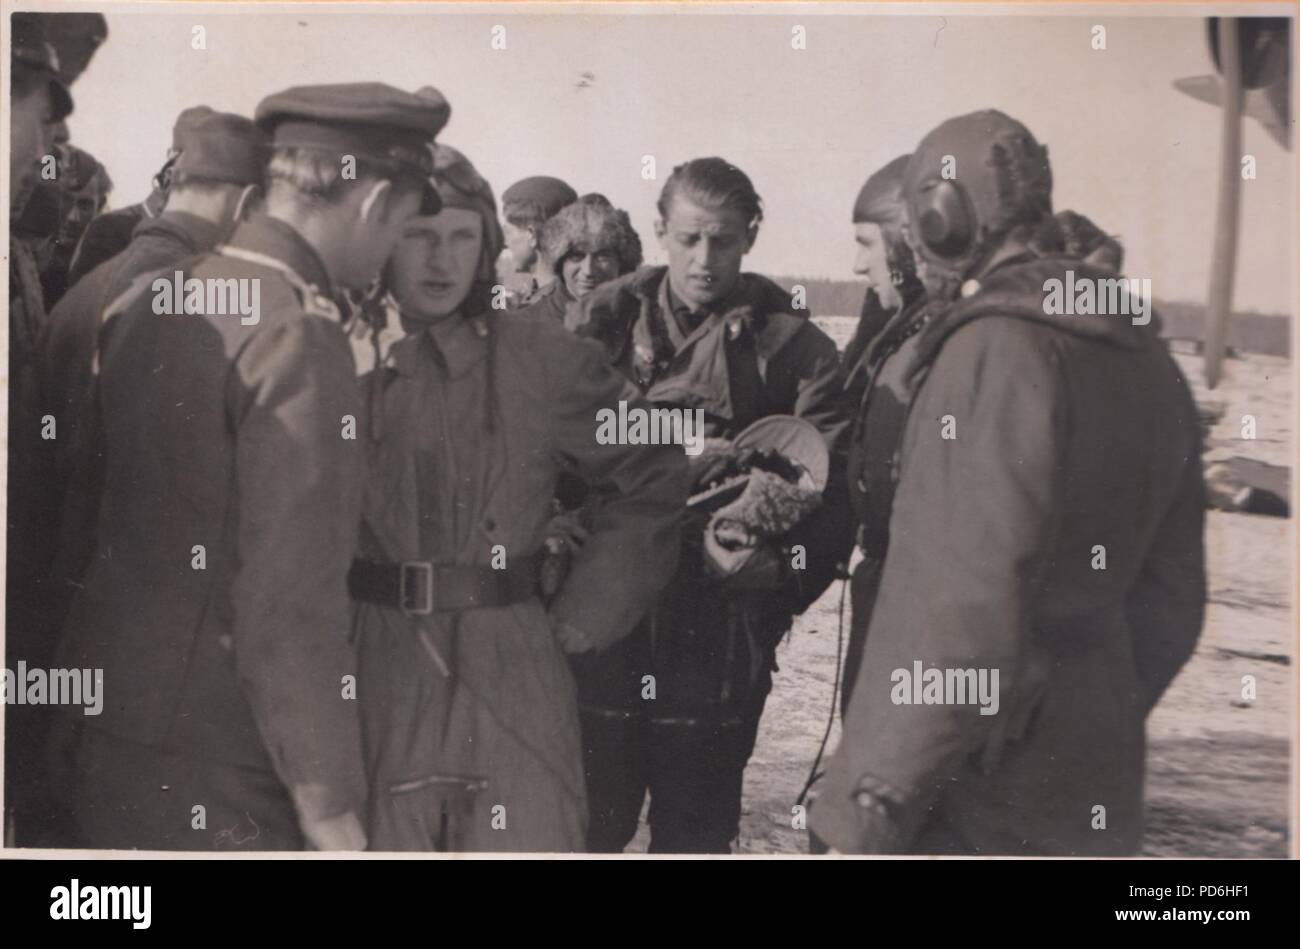 Bild aus dem Fotoalbum von Oberleutnant Oscar Müller von kampfgeschwader 1: Oscar Müller (Mitte, ohne Kopfbedeckung) und seine Mannschaft der 5./KG 1, diskutieren mit ihren Boden Crew nach der Landung am Dno Flugplatz, Russland 1942. Stockfoto